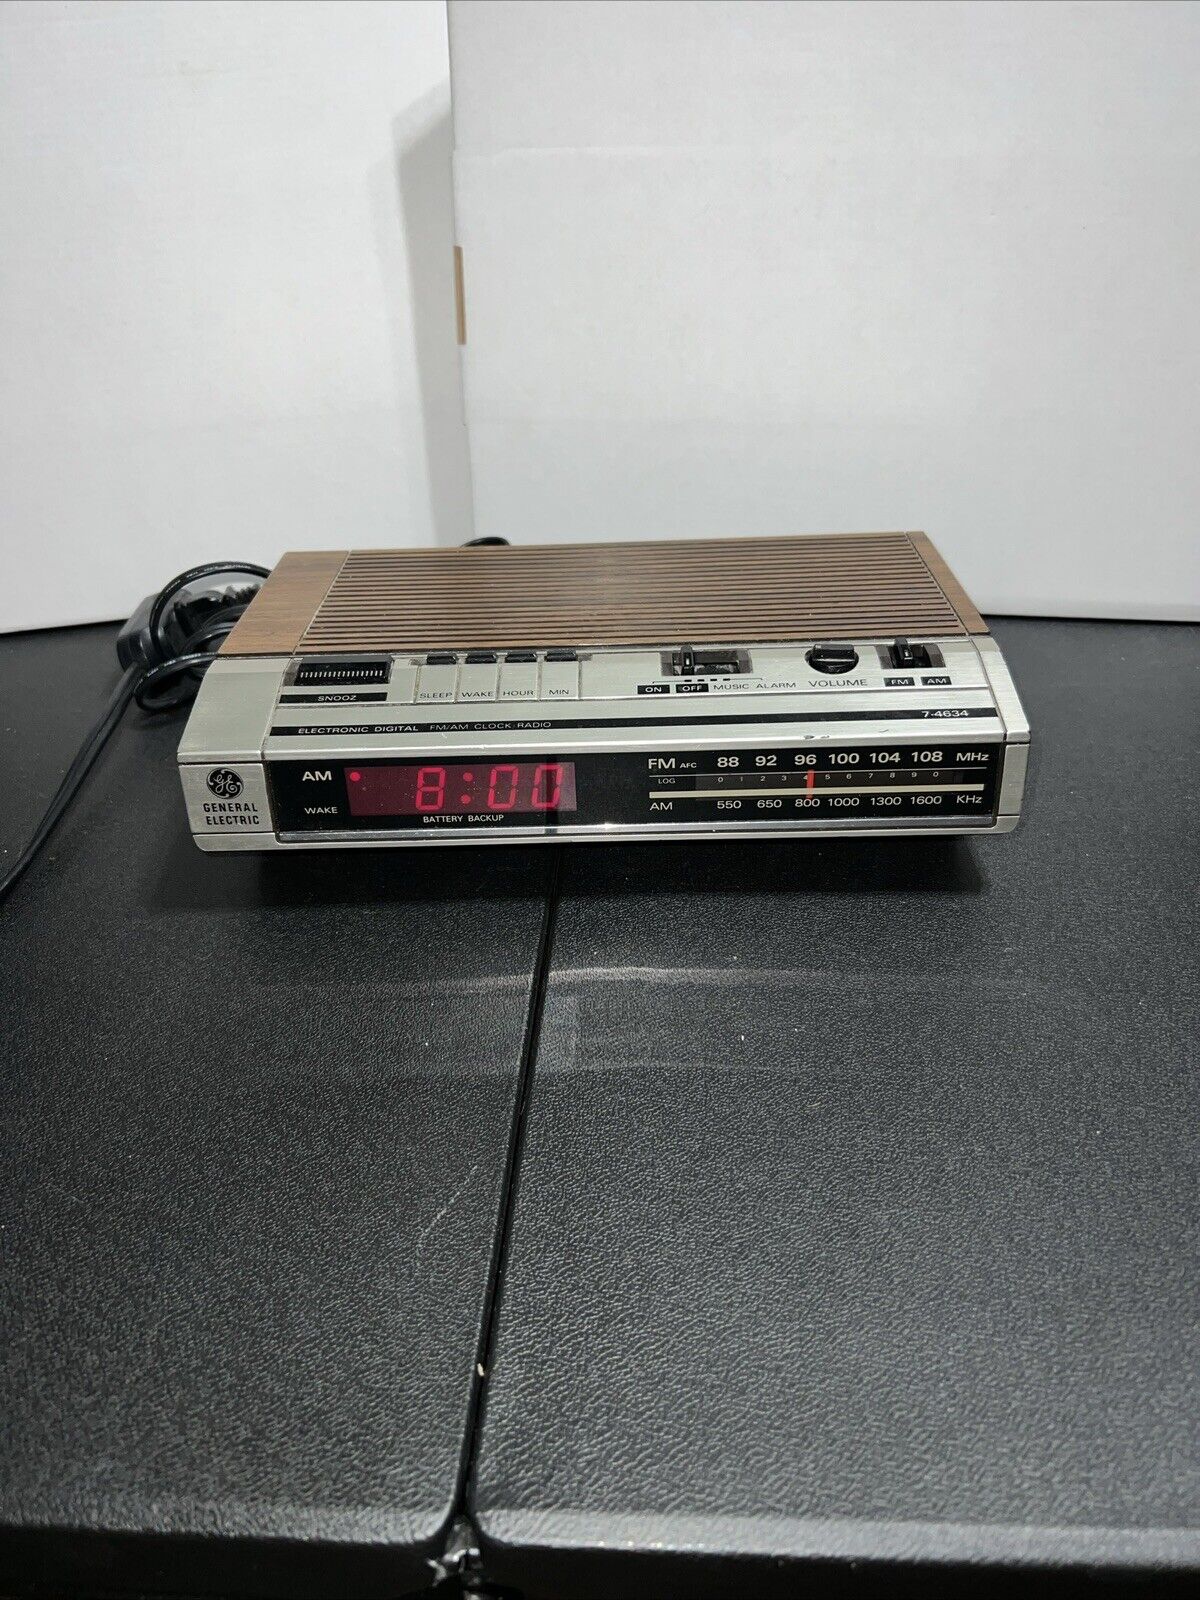 Vintage General Electric AM/FM Alarm Clock/Radio Model 7-4634B Woodgrain Working